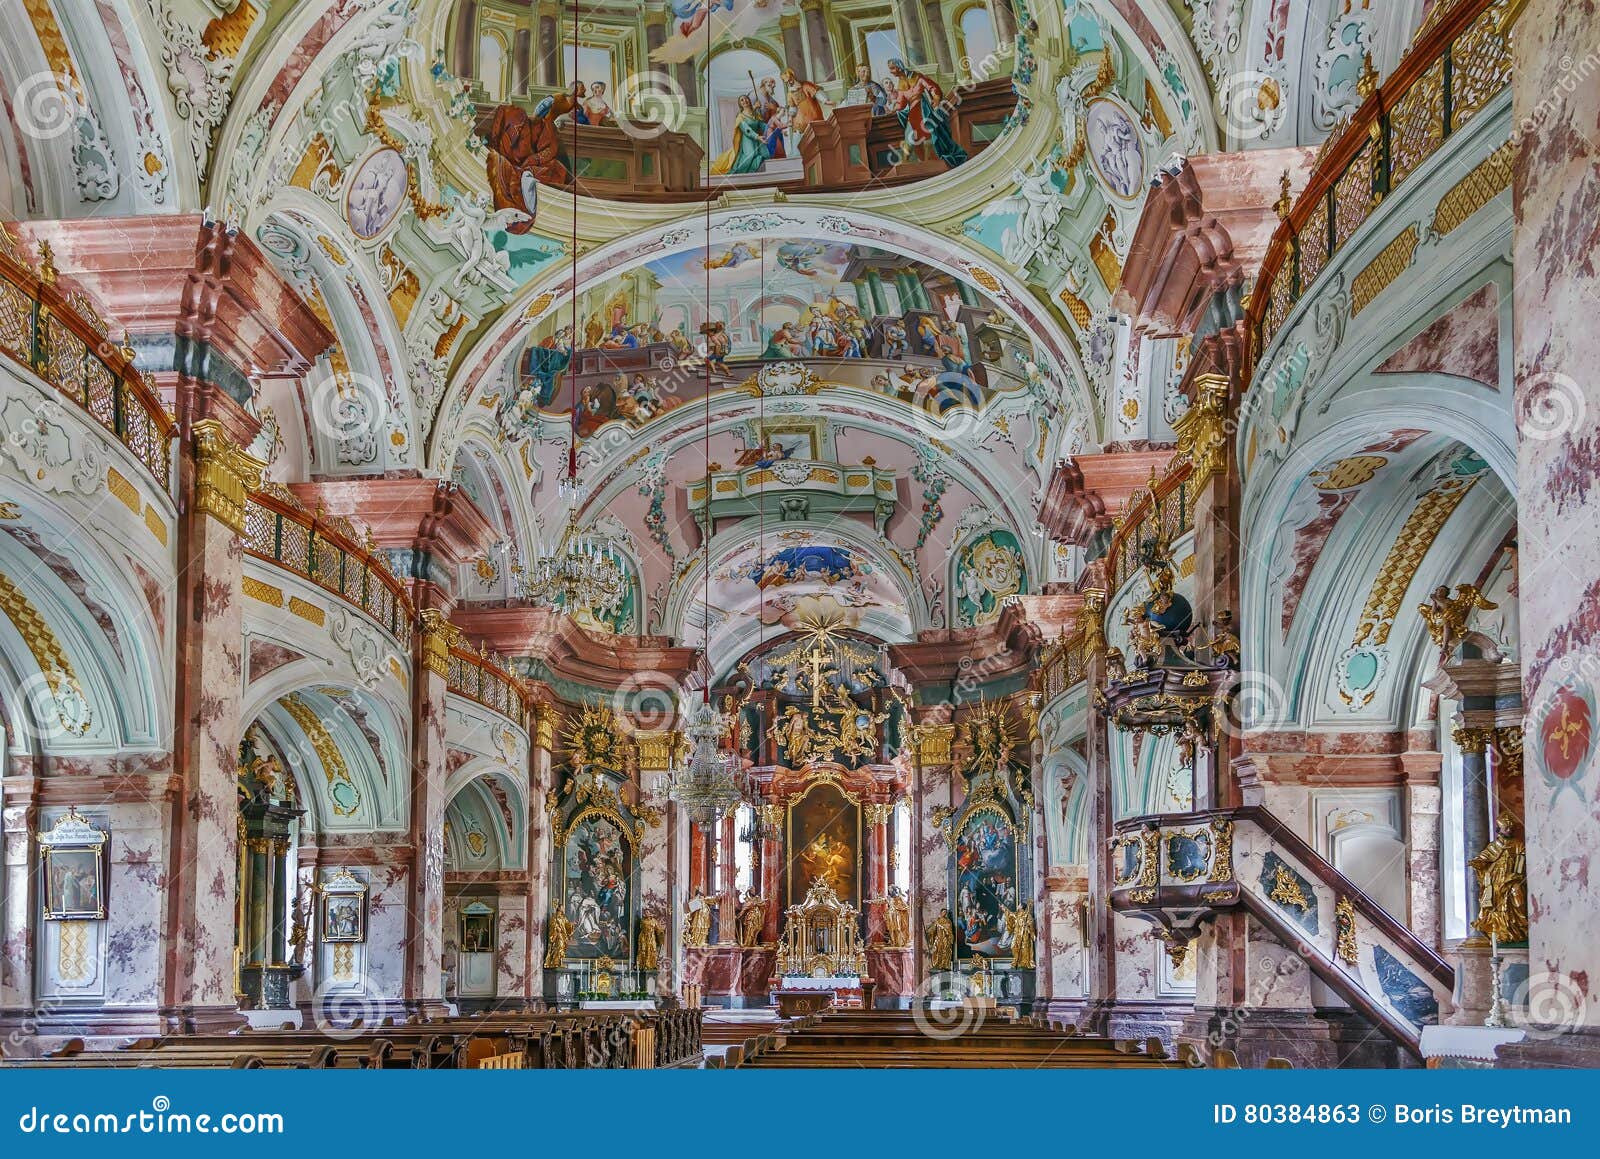 rein abbey, austria